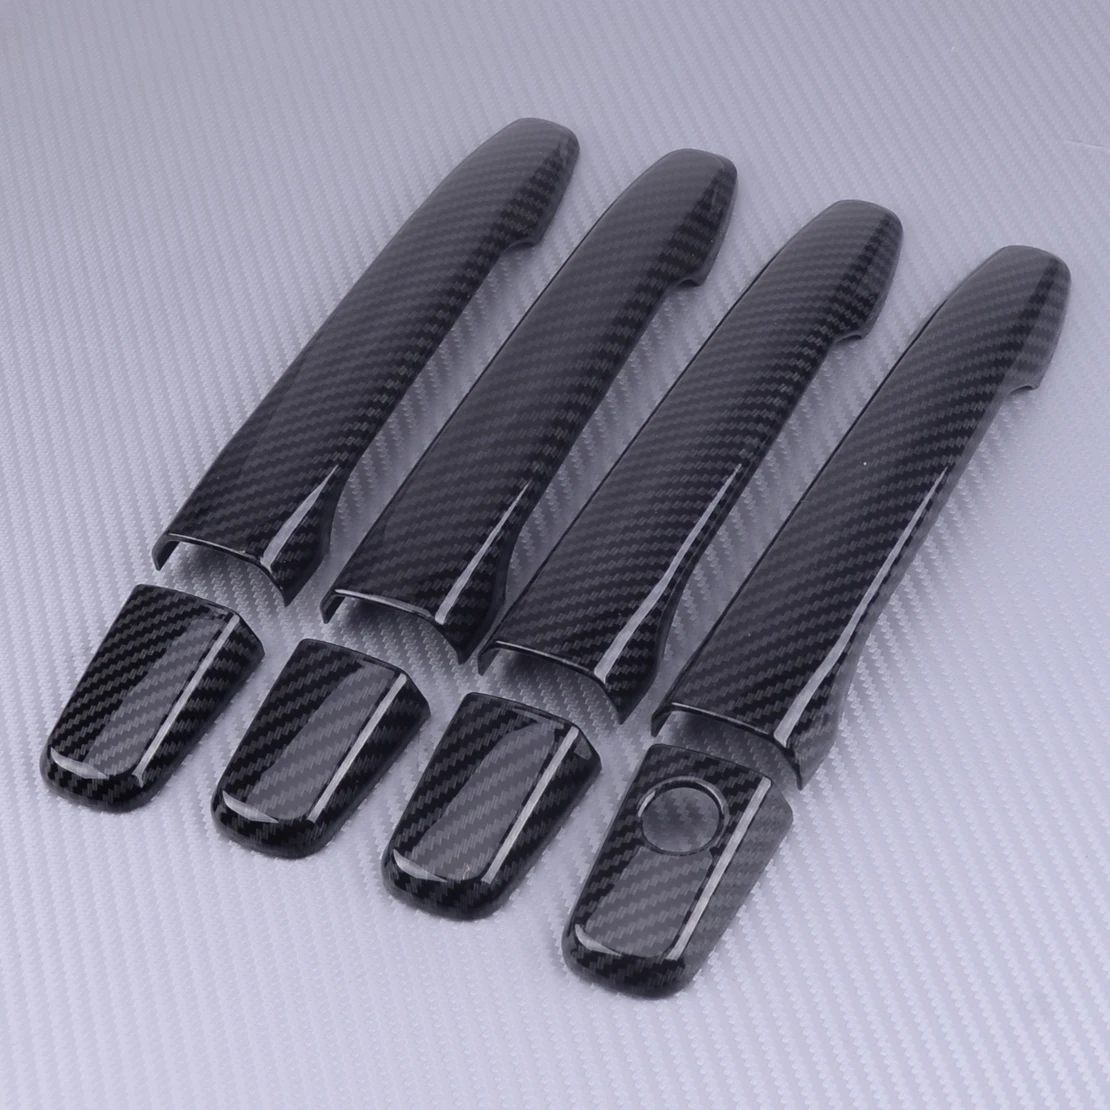 CITALL углеродного волокна автомобилей дверные ручки крышки отделка, пригодный для Защитные чехлы для сидений, сшитые специально для Mitsubishi Lancer EX Evolution X 2008-20112012 2013